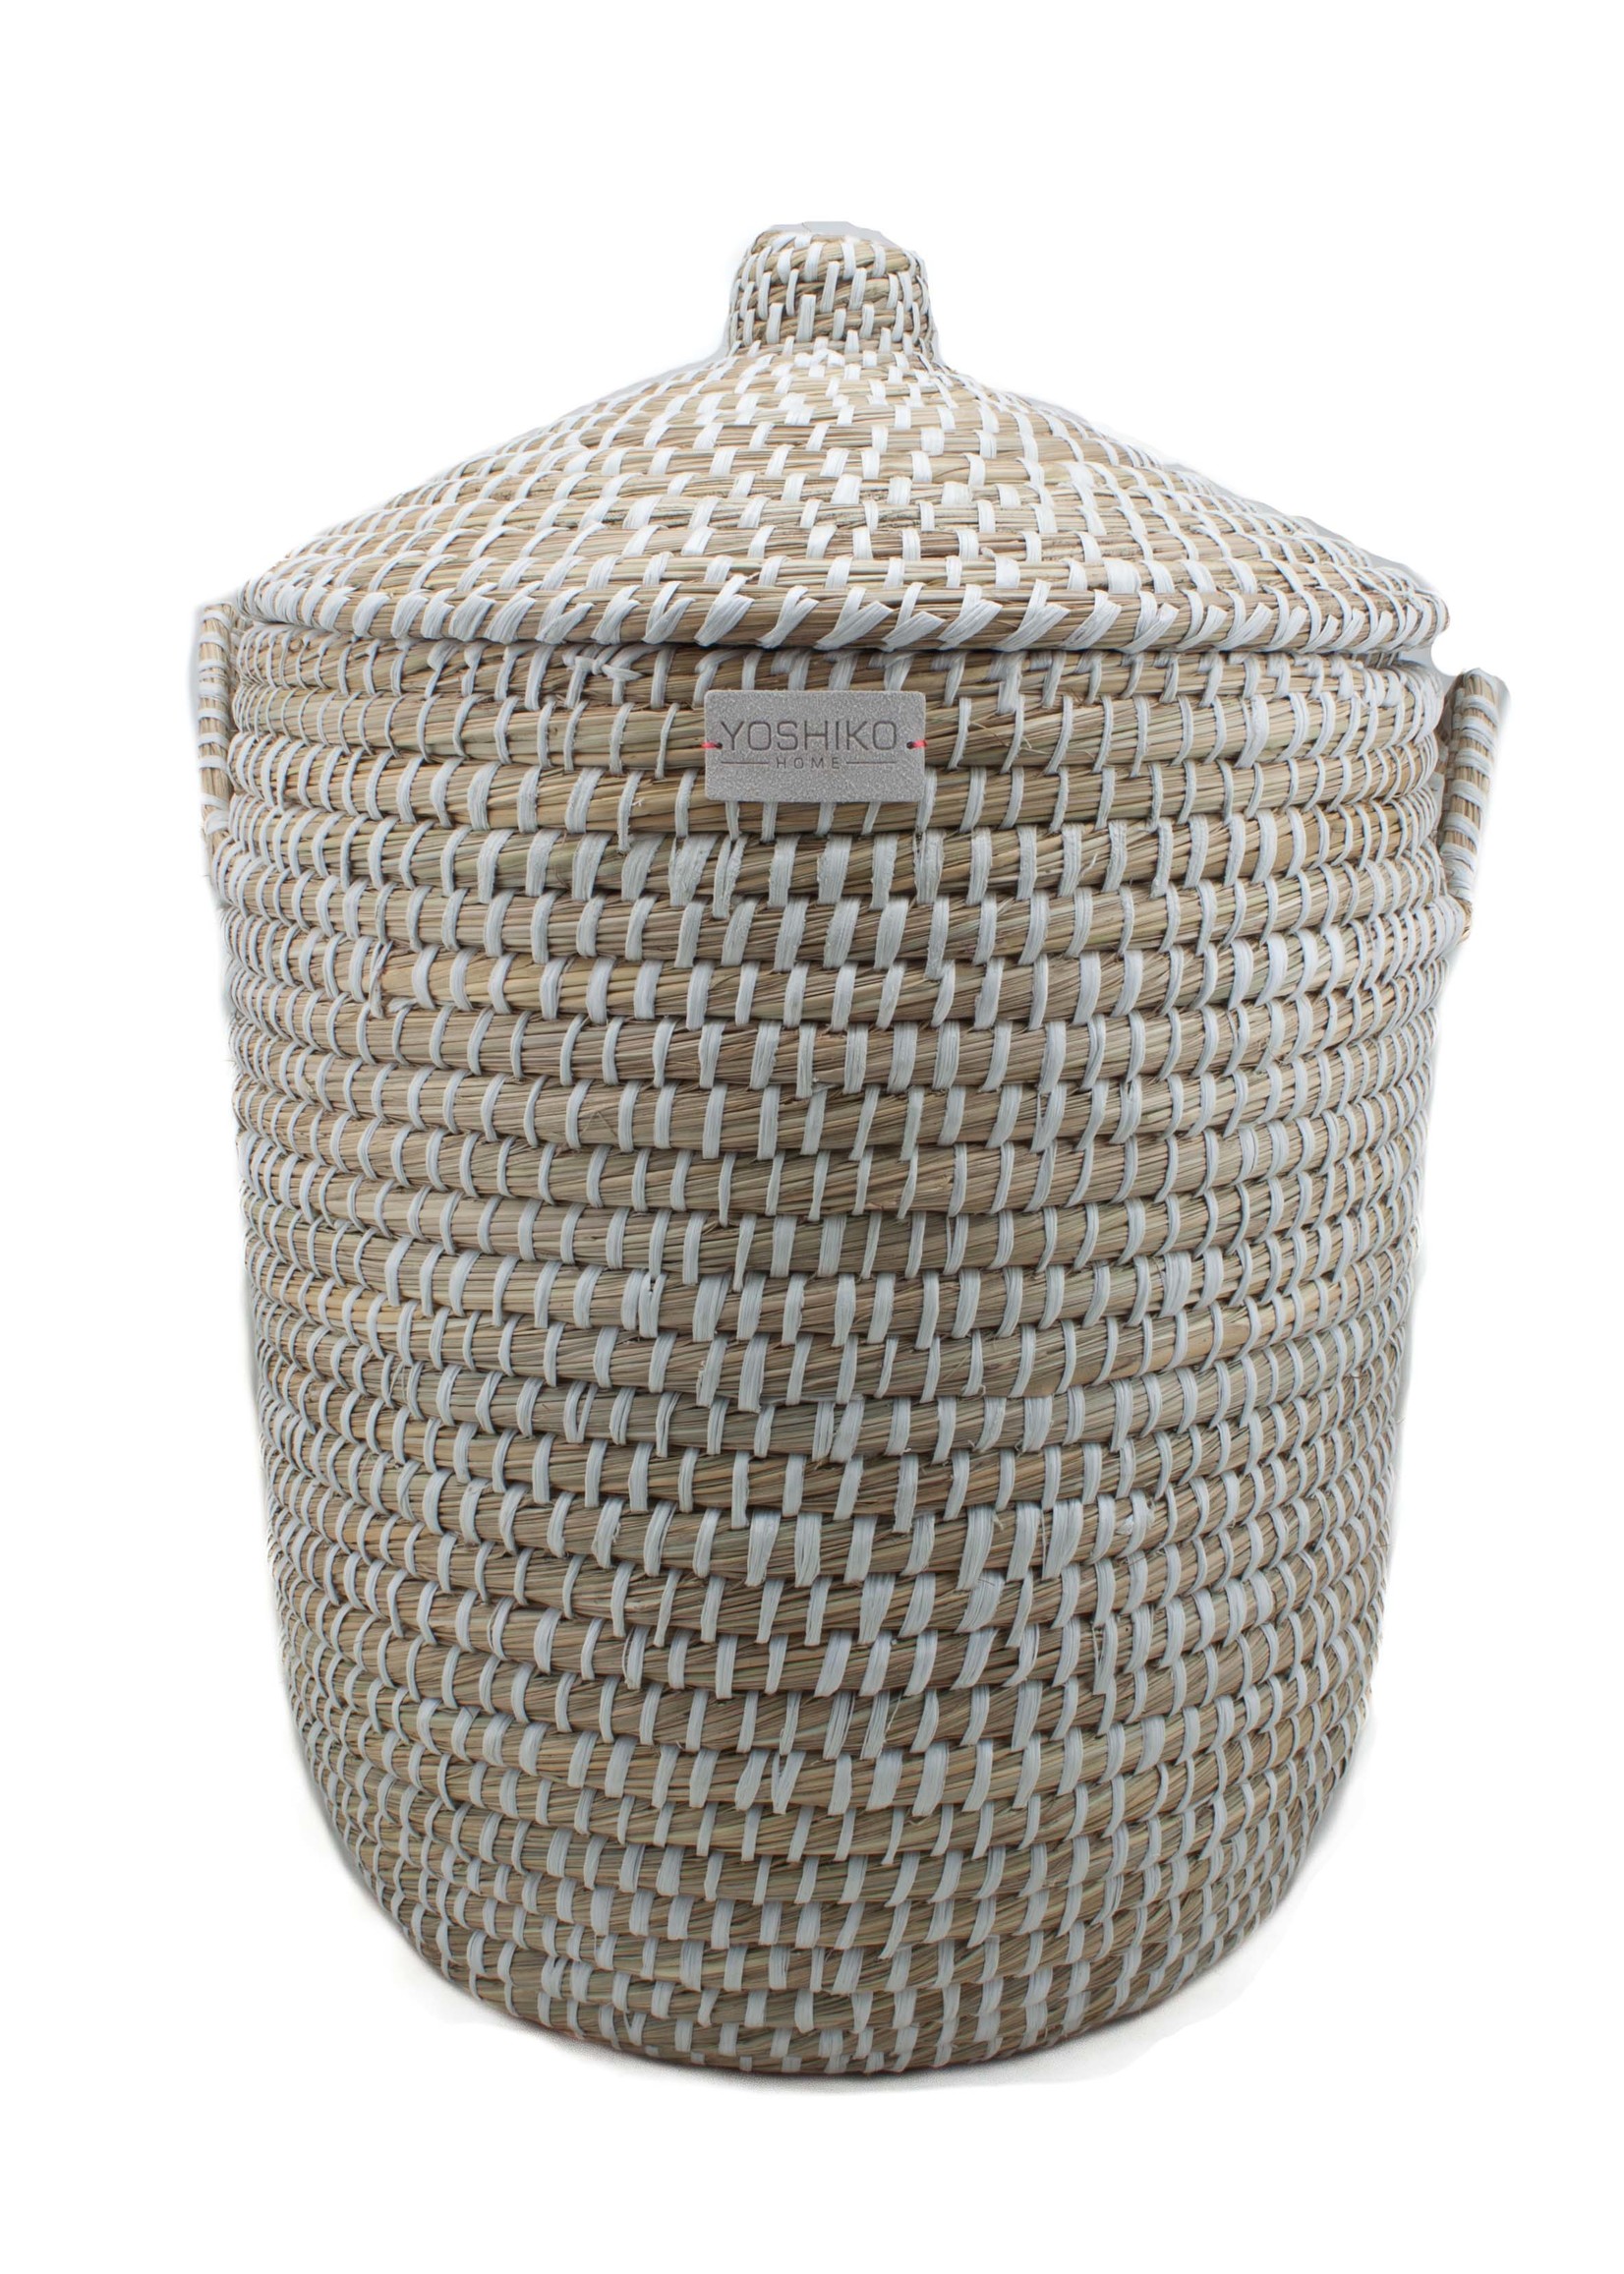 Yoshiko Kaisagrass basket with lid white Medium (H40/50xD32cm)